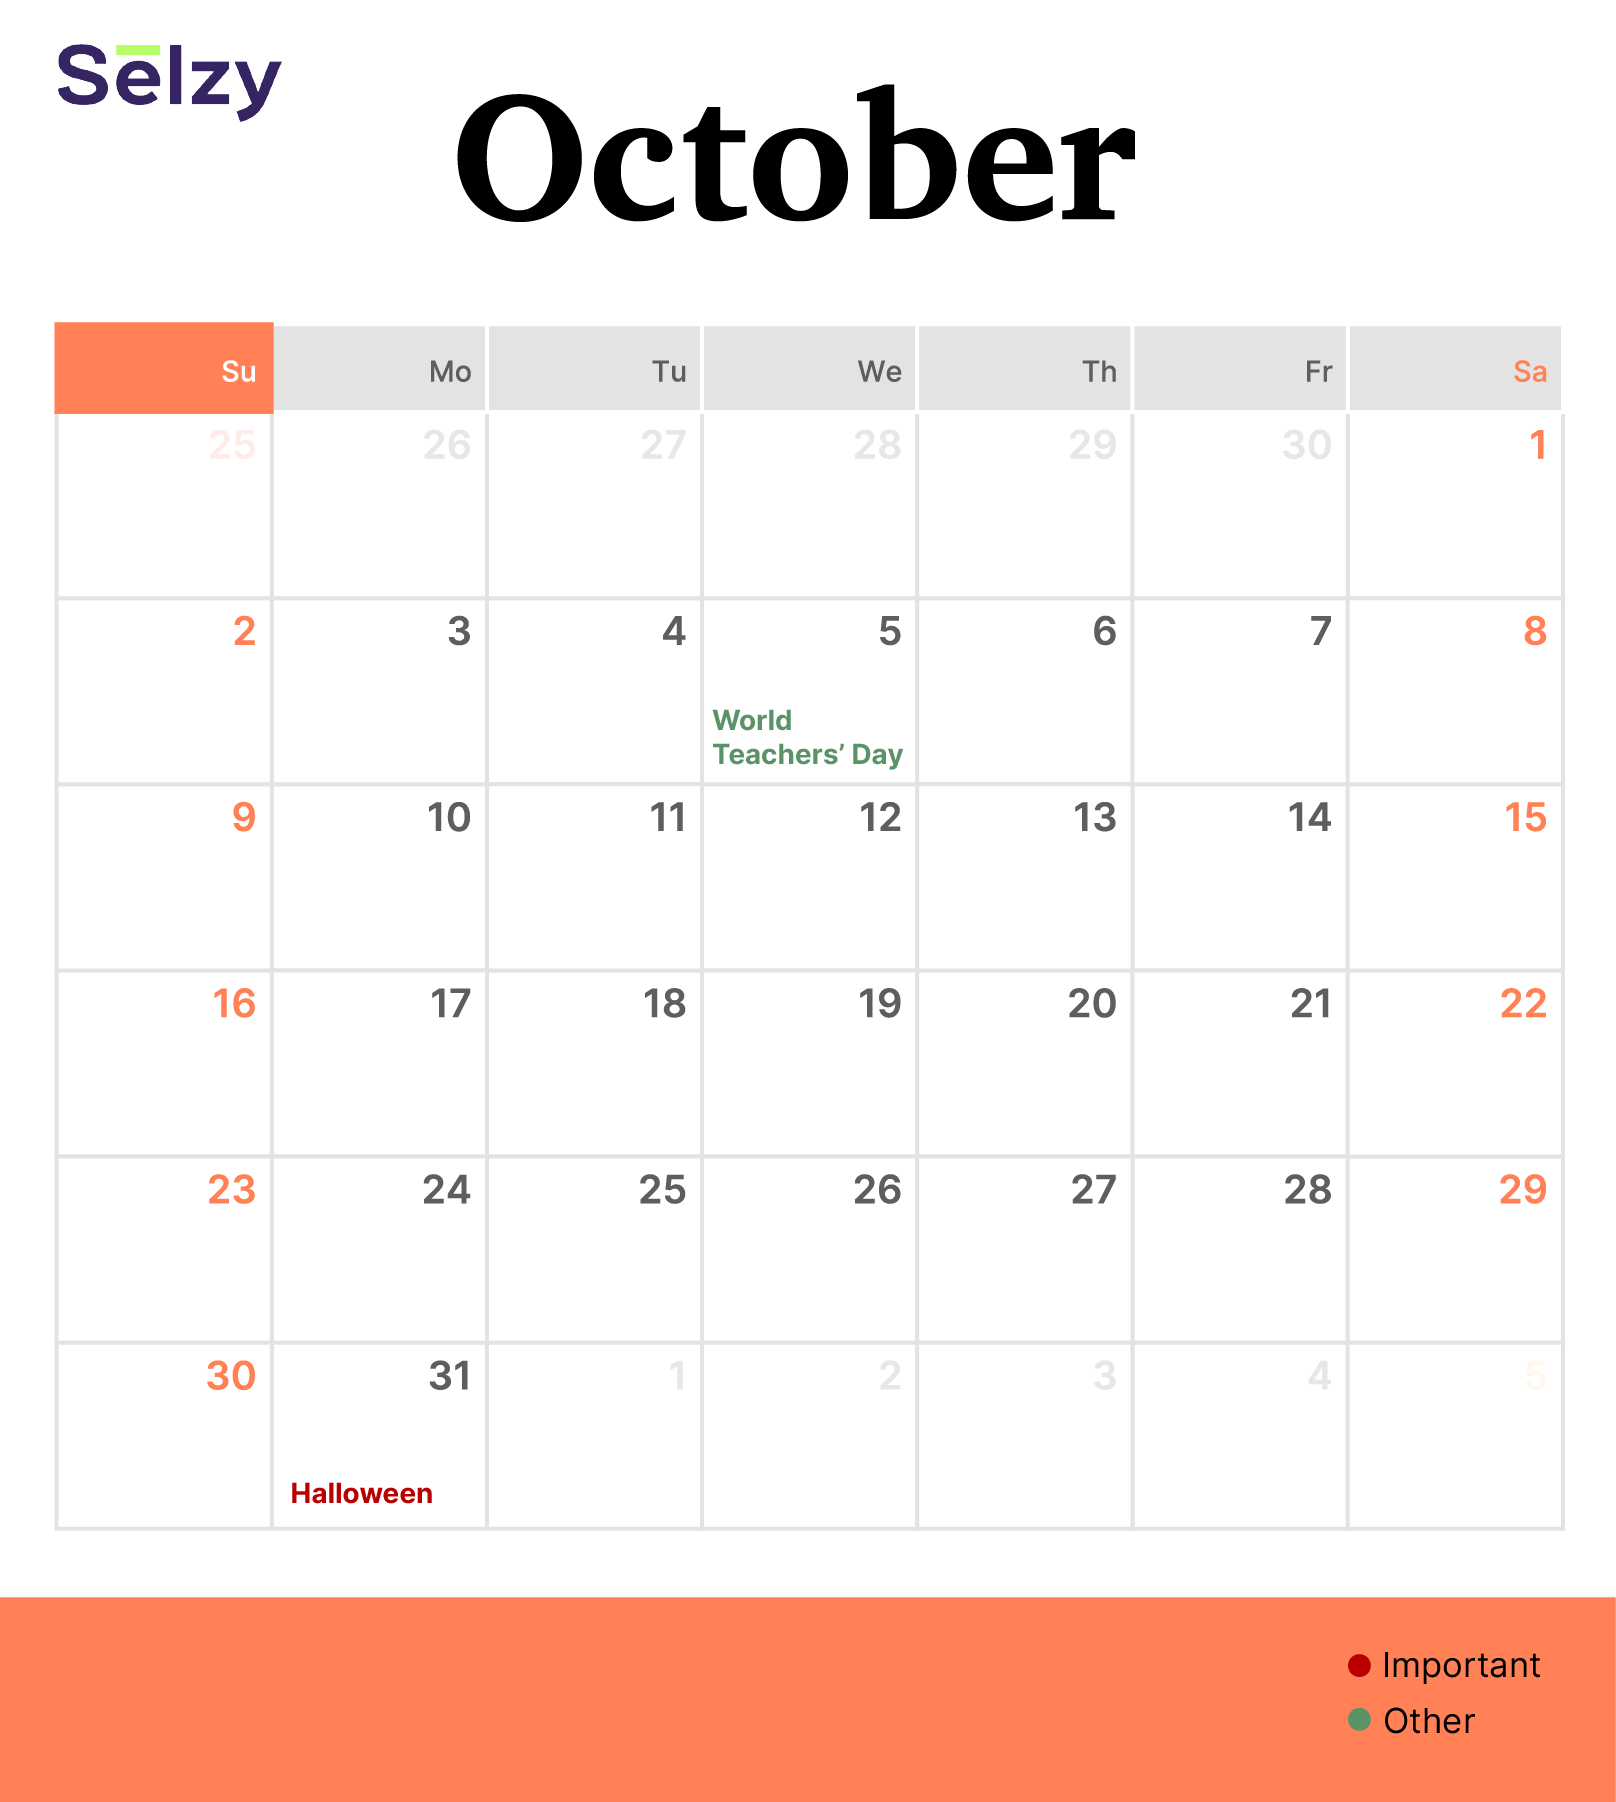 Holiday Marketing Calendar – October